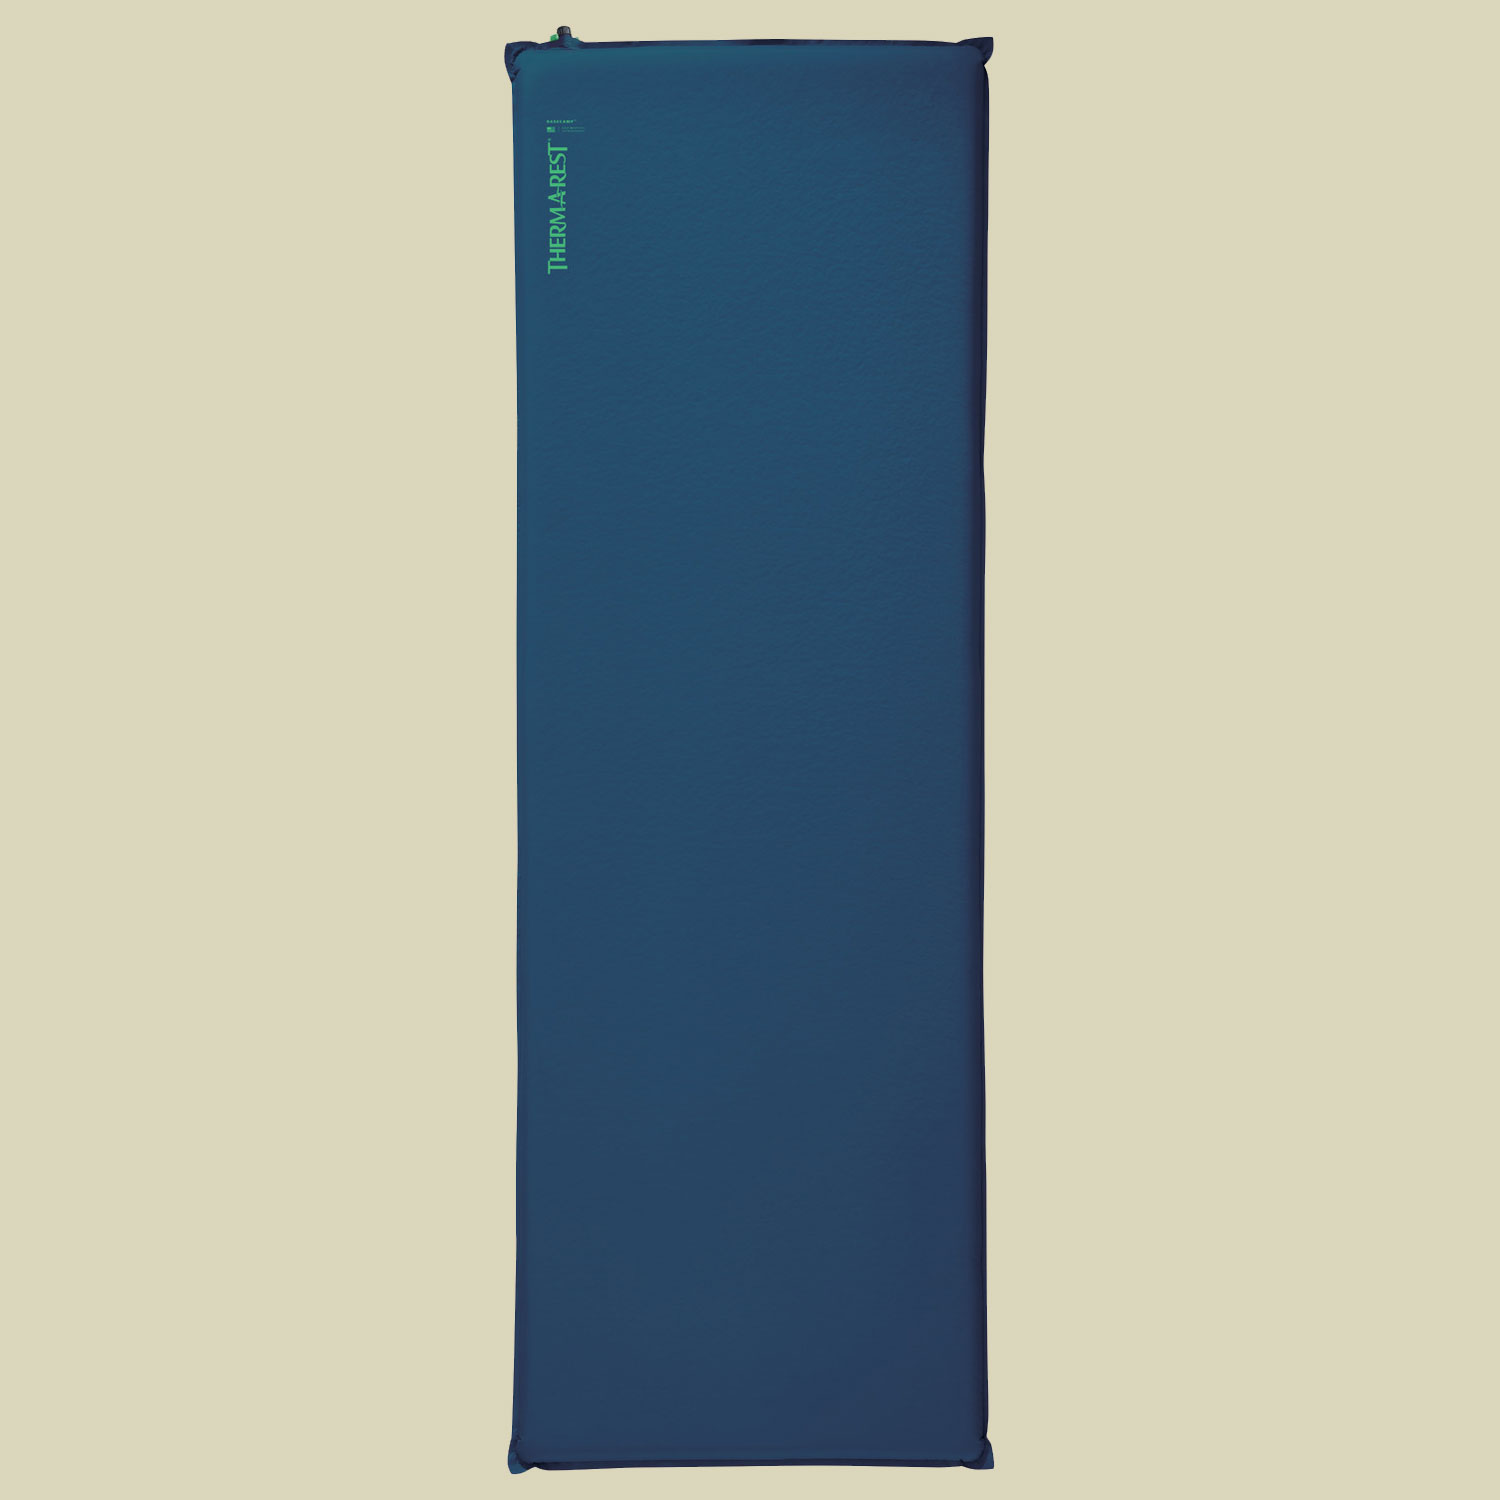 BaseCamp Liegefläche 196 x 76 cm (XL) Farbe poseidon blue